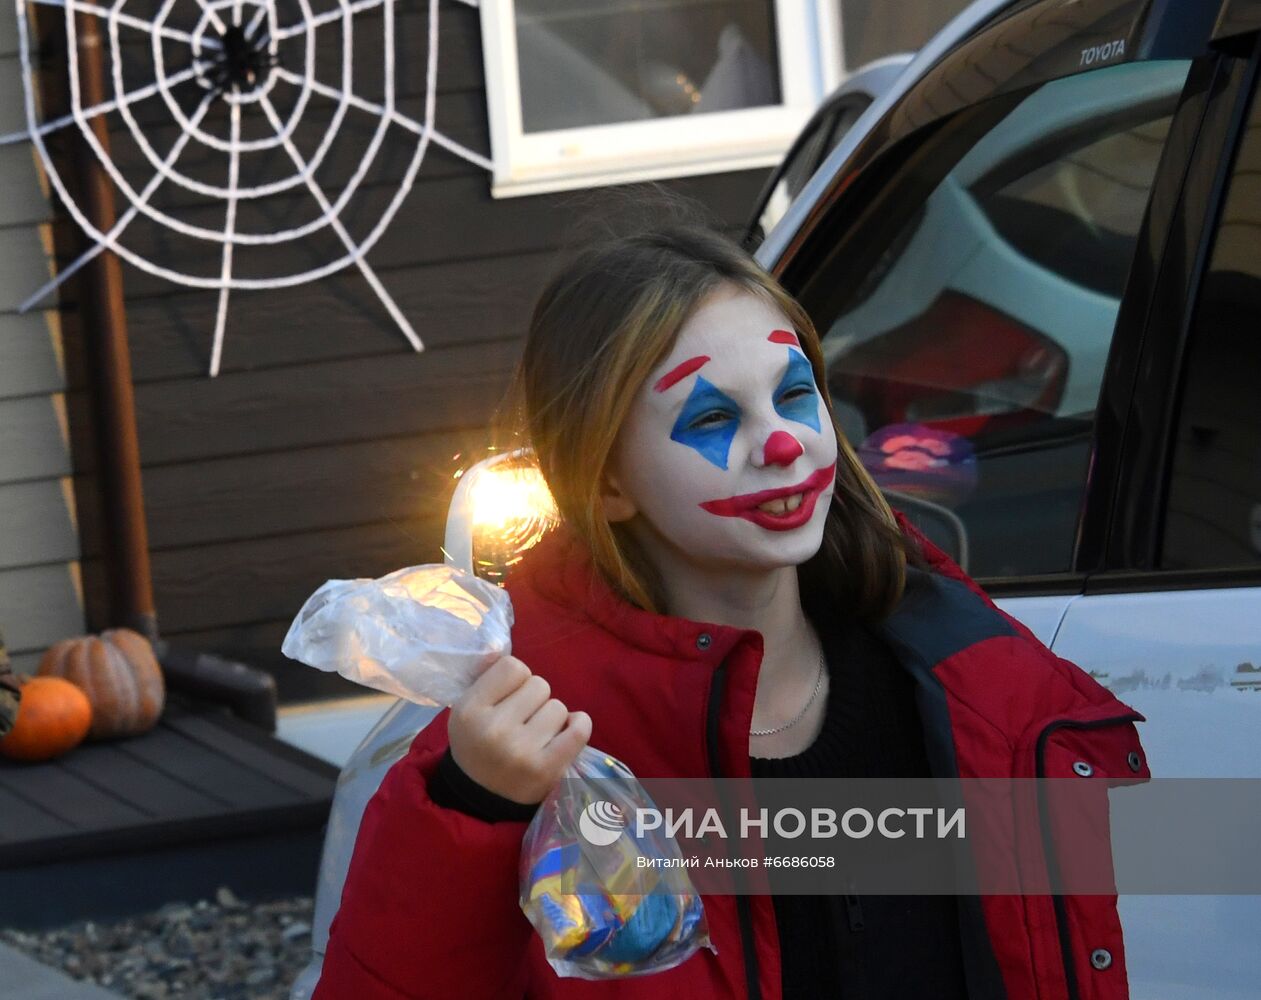 Празднование Хэллоуина в Приморье